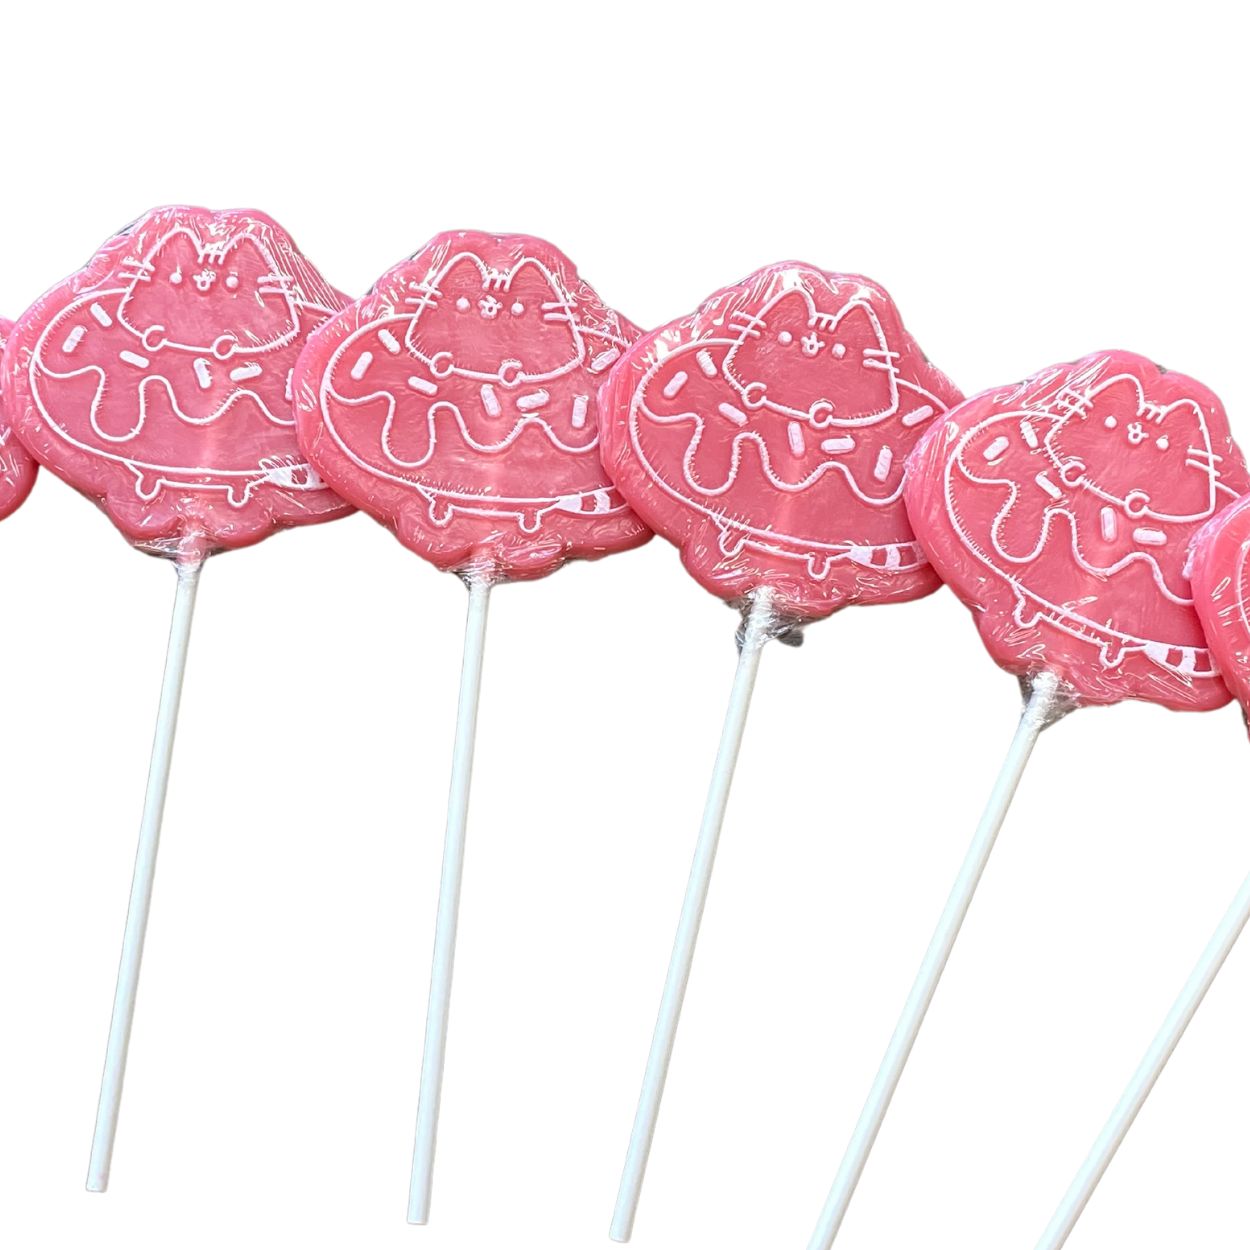 Pusheen Doughnut Lollipops (Pink) 60g